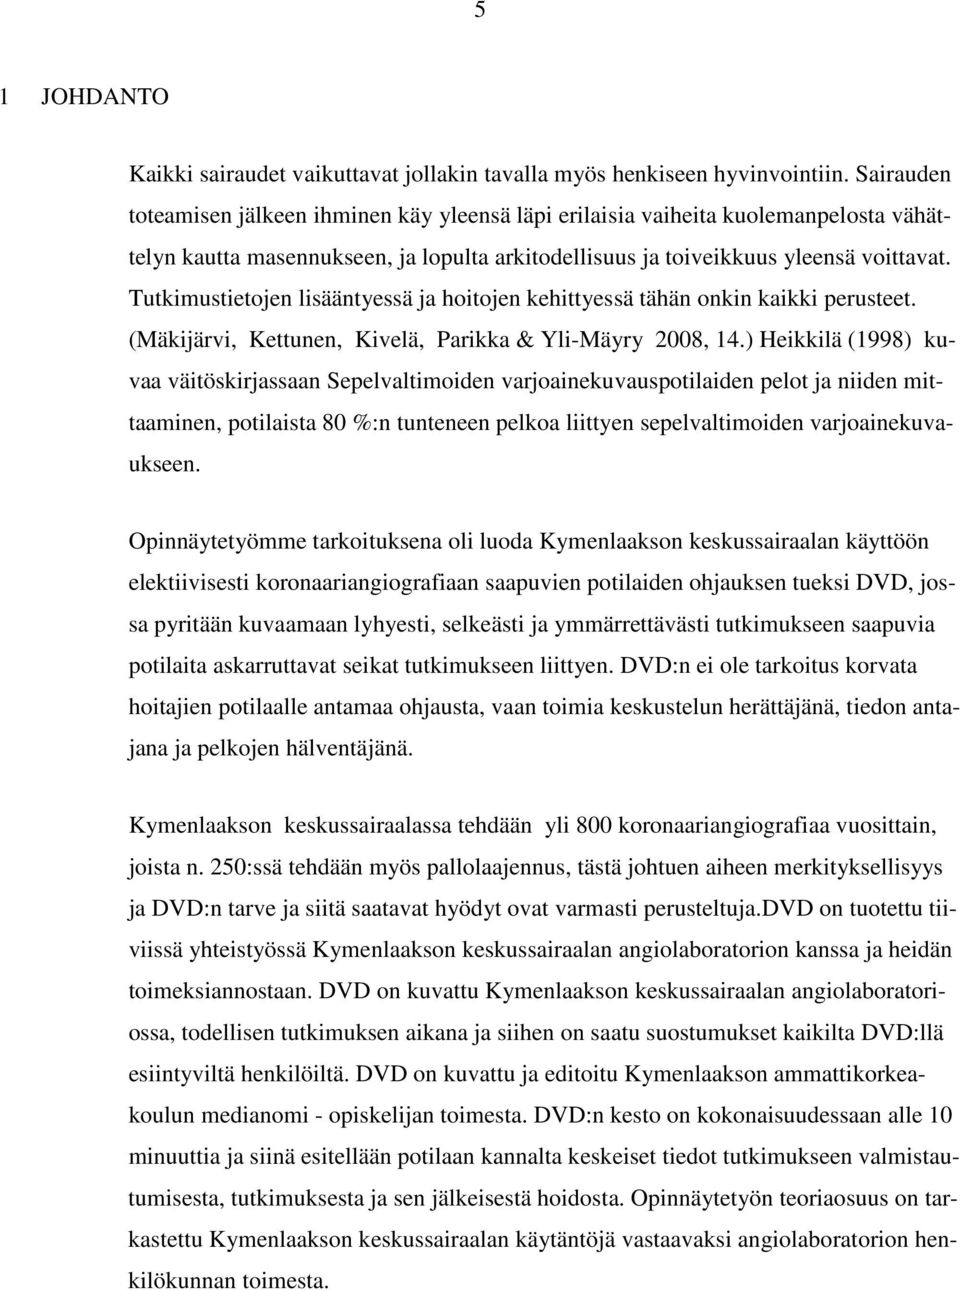 Tutkimustietojen lisääntyessä ja hoitojen kehittyessä tähän onkin kaikki perusteet. (Mäkijärvi, Kettunen, Kivelä, Parikka & Yli-Mäyry 2008, 14.